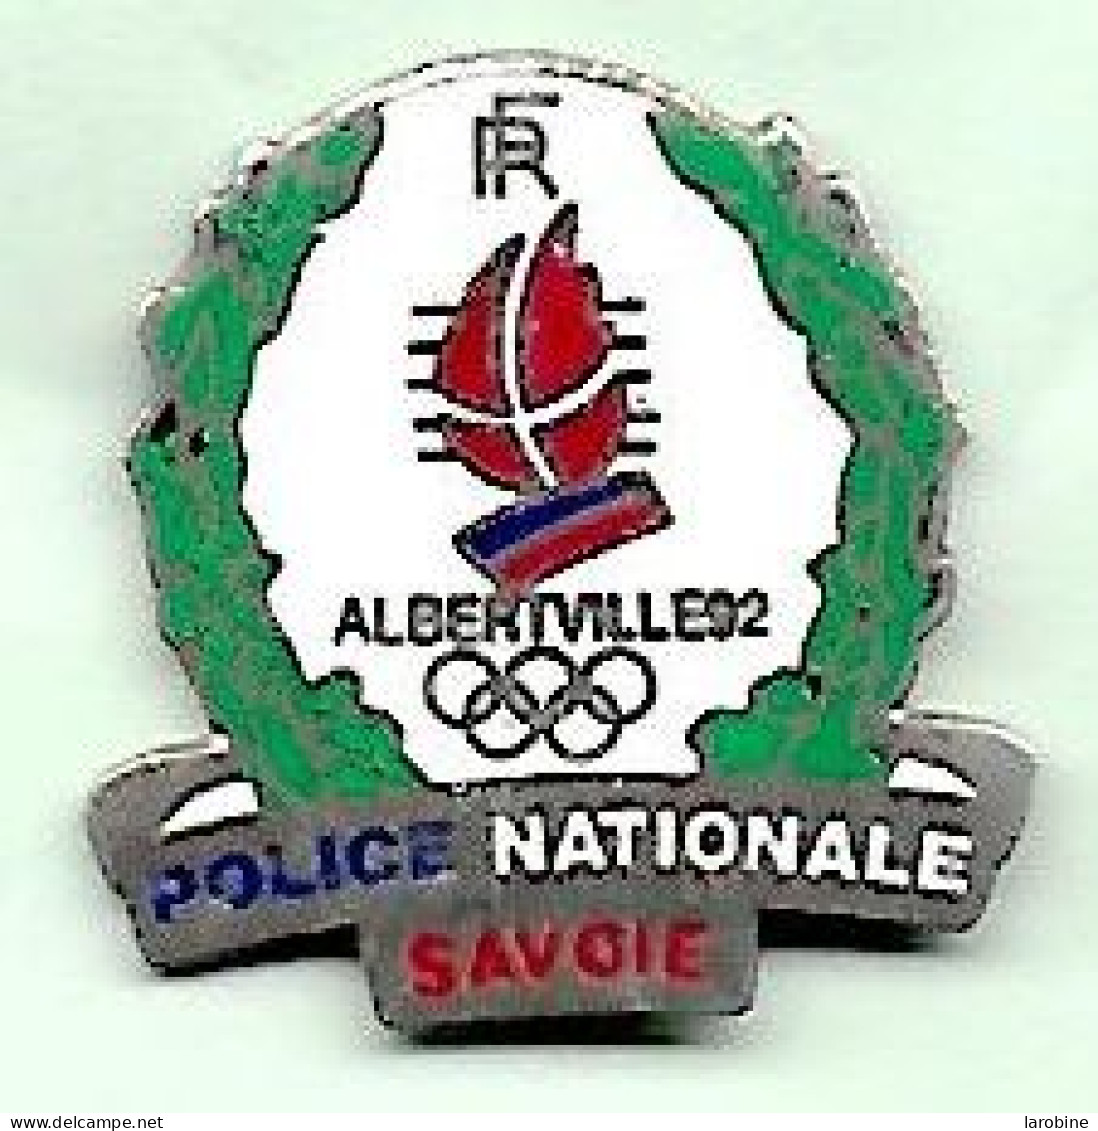 @@ Police Nationale Jeux Olympiques Savoie Albertville 1992 (2.4x2.4) EGF @@jo07 - Jeux Olympiques